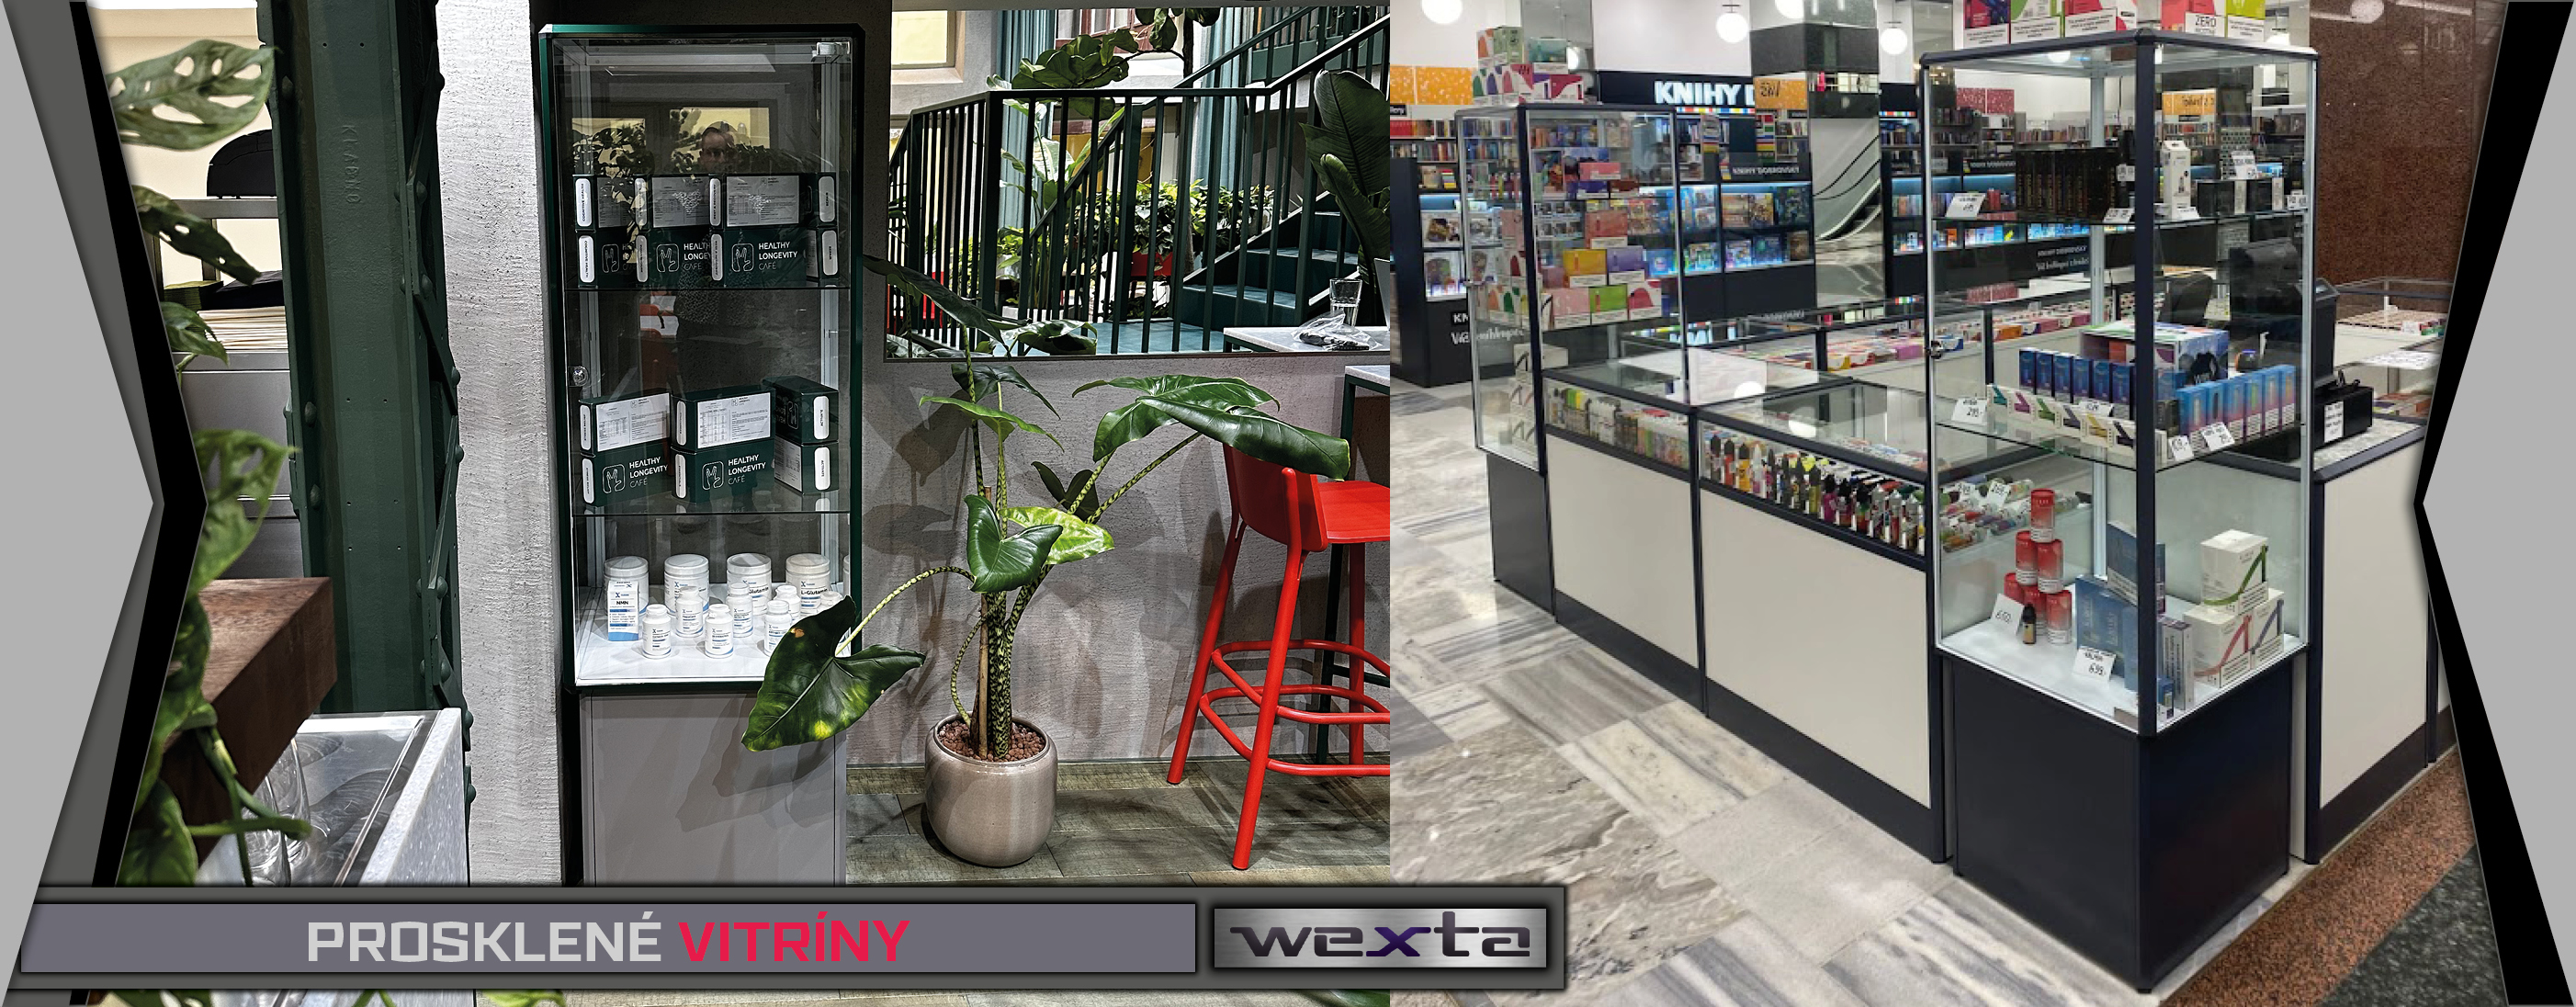 Prosklené vitríny - Vybavení obchodů a prodejen - Wexta